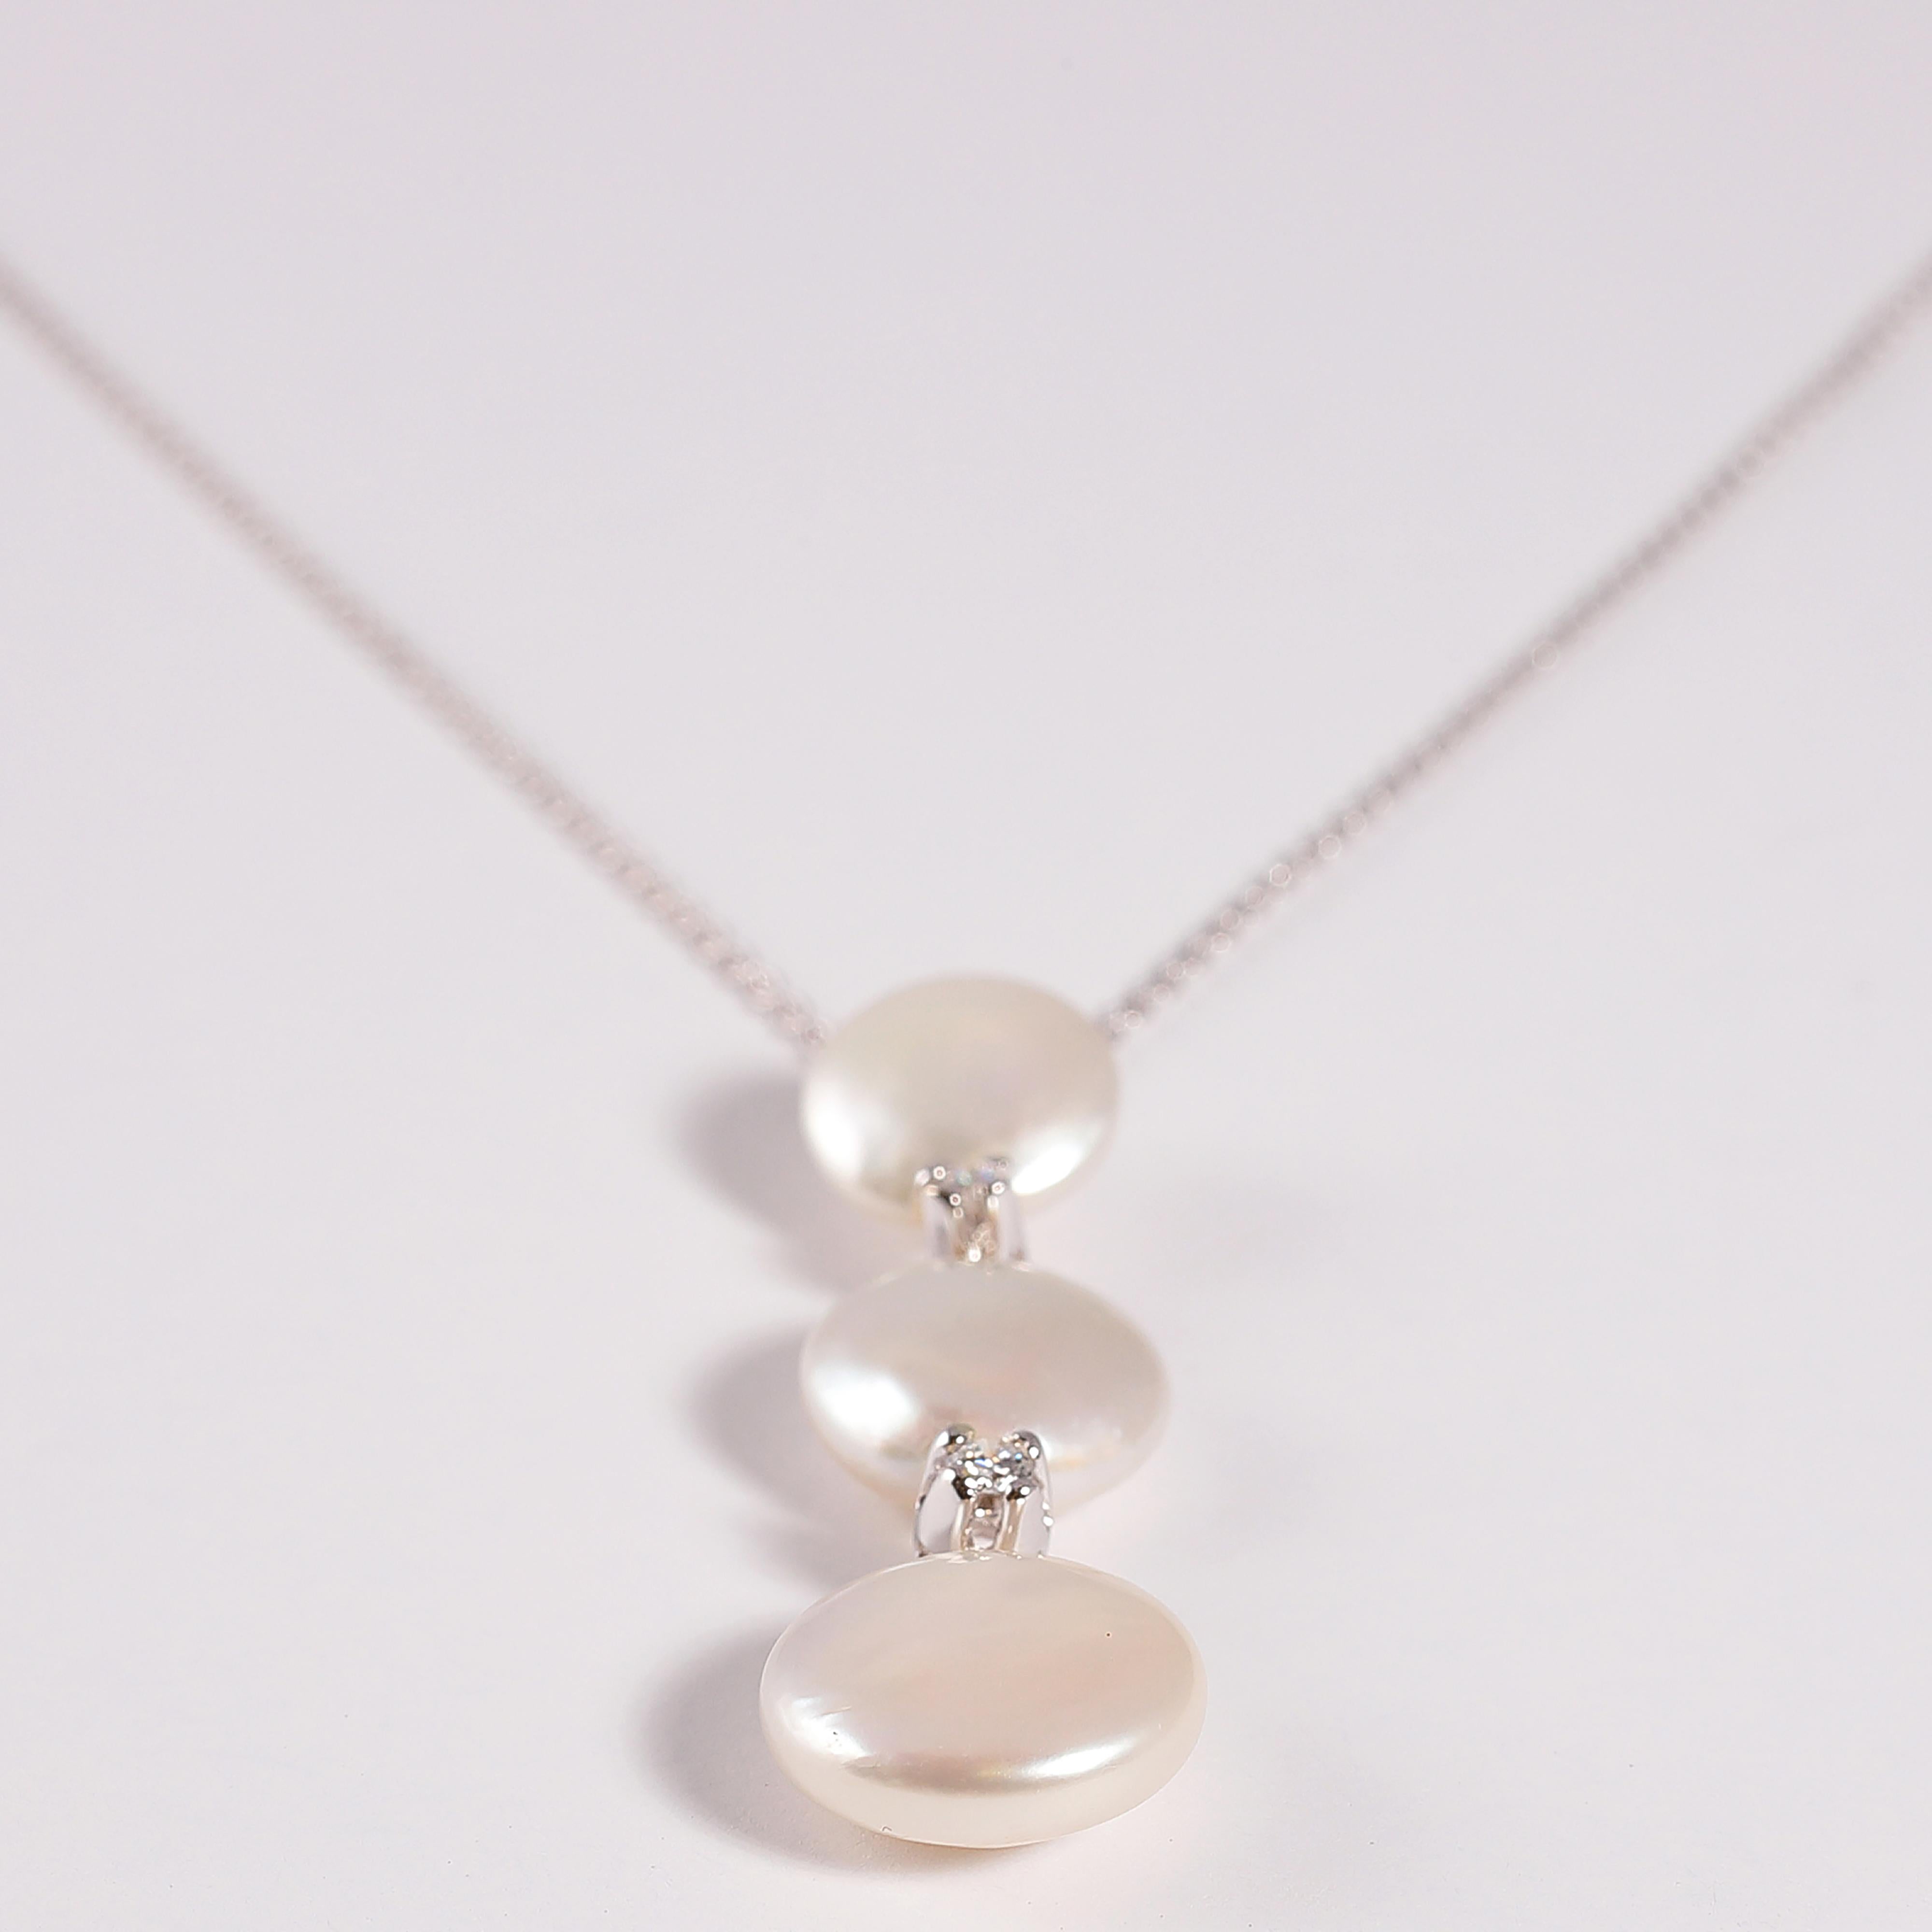 Cette chaîne en or blanc 18 carats de 16 1/4 pouces suspend une goutte en or blanc de 1 1/2 pouce qui supporte trois perles de culture Biwa et deux diamants ronds, le tout signé par le célèbre designer Yvel !  